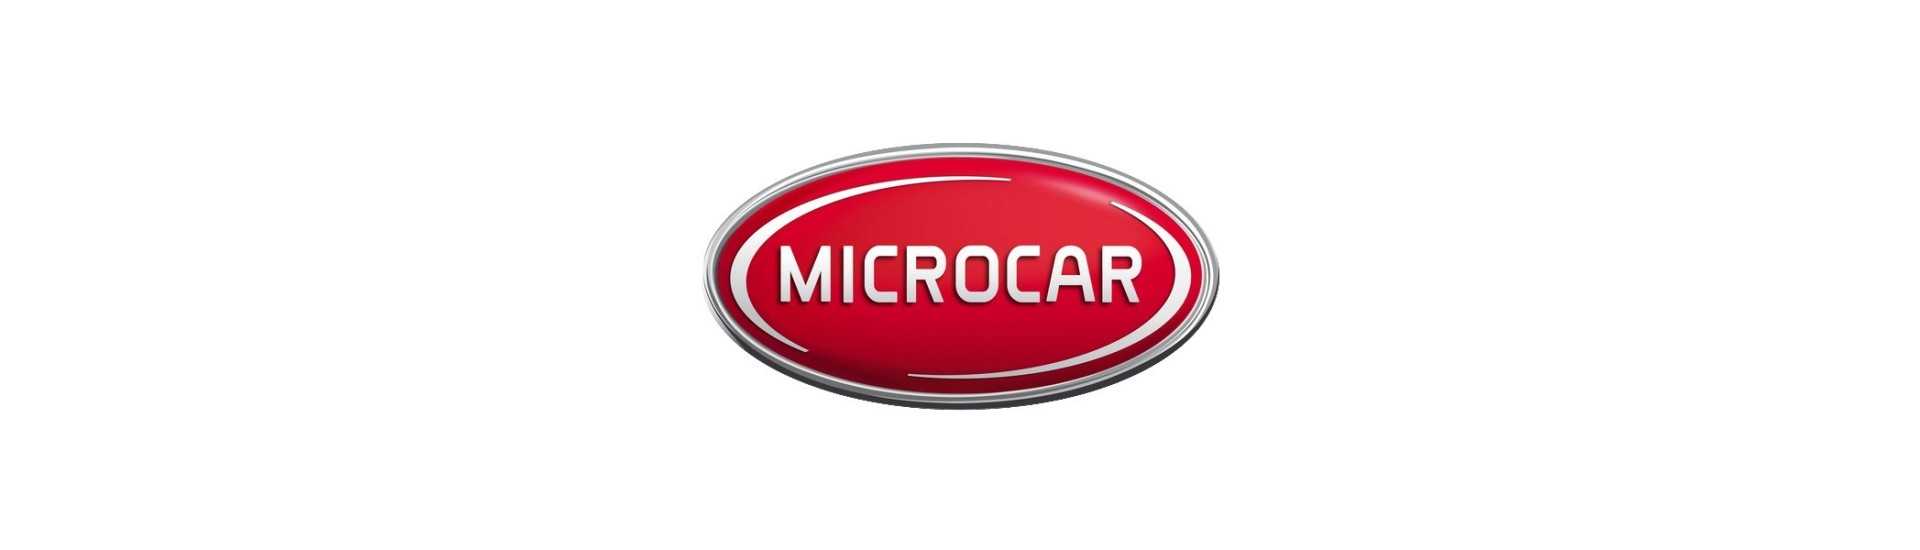 tambor freno al mejor precio para coche sin permiso Microcar